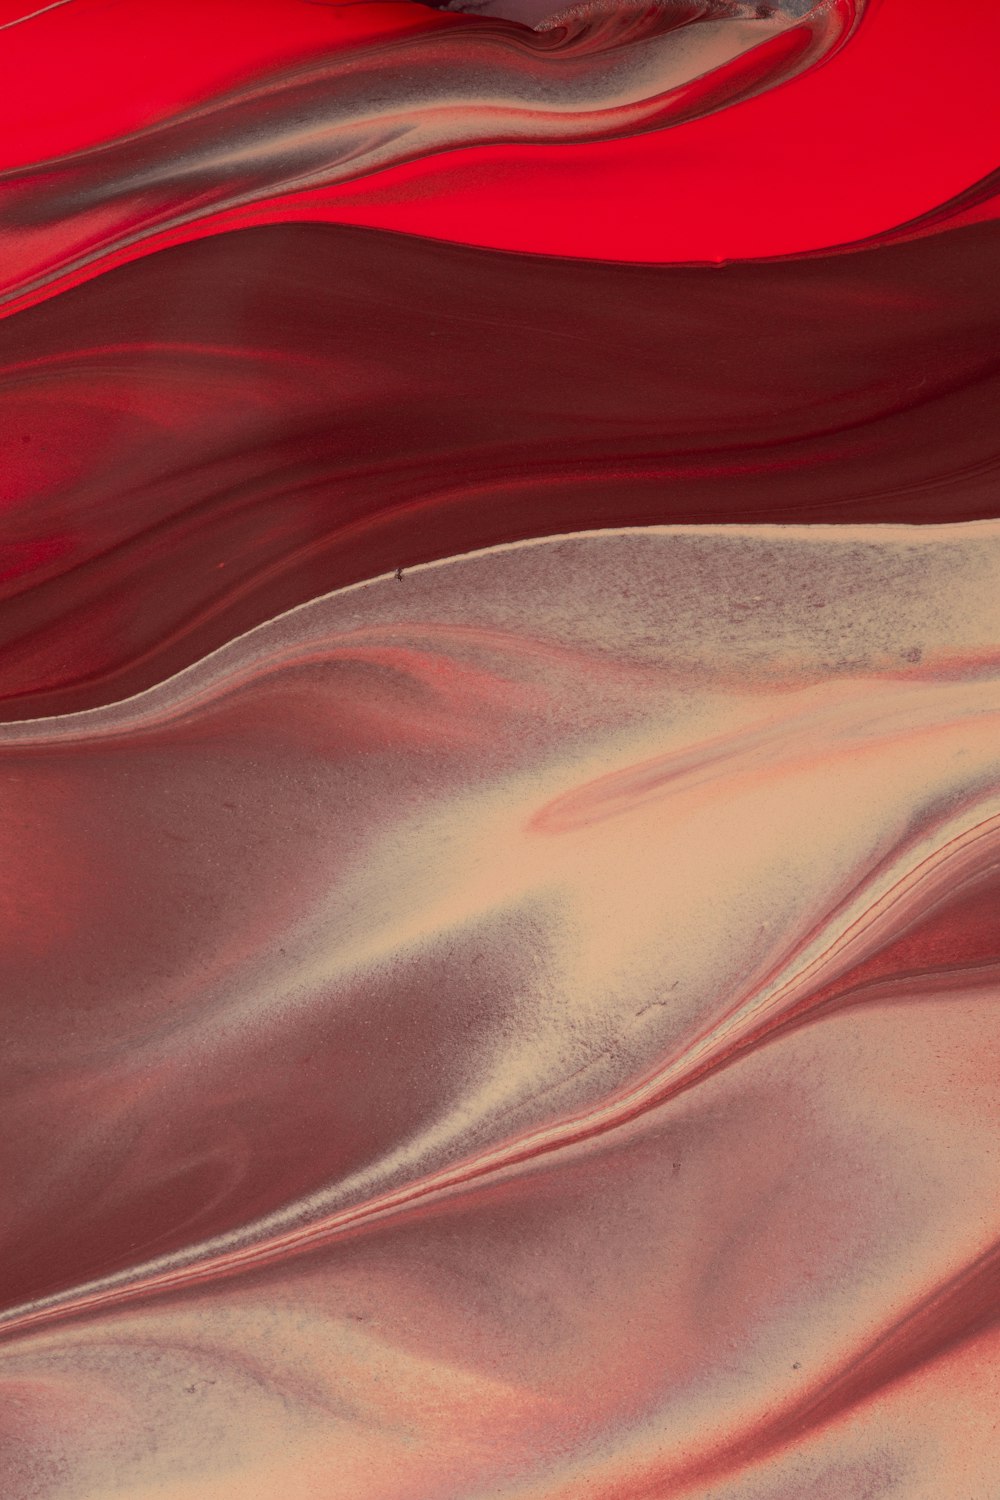 areia branca com tecido vermelho